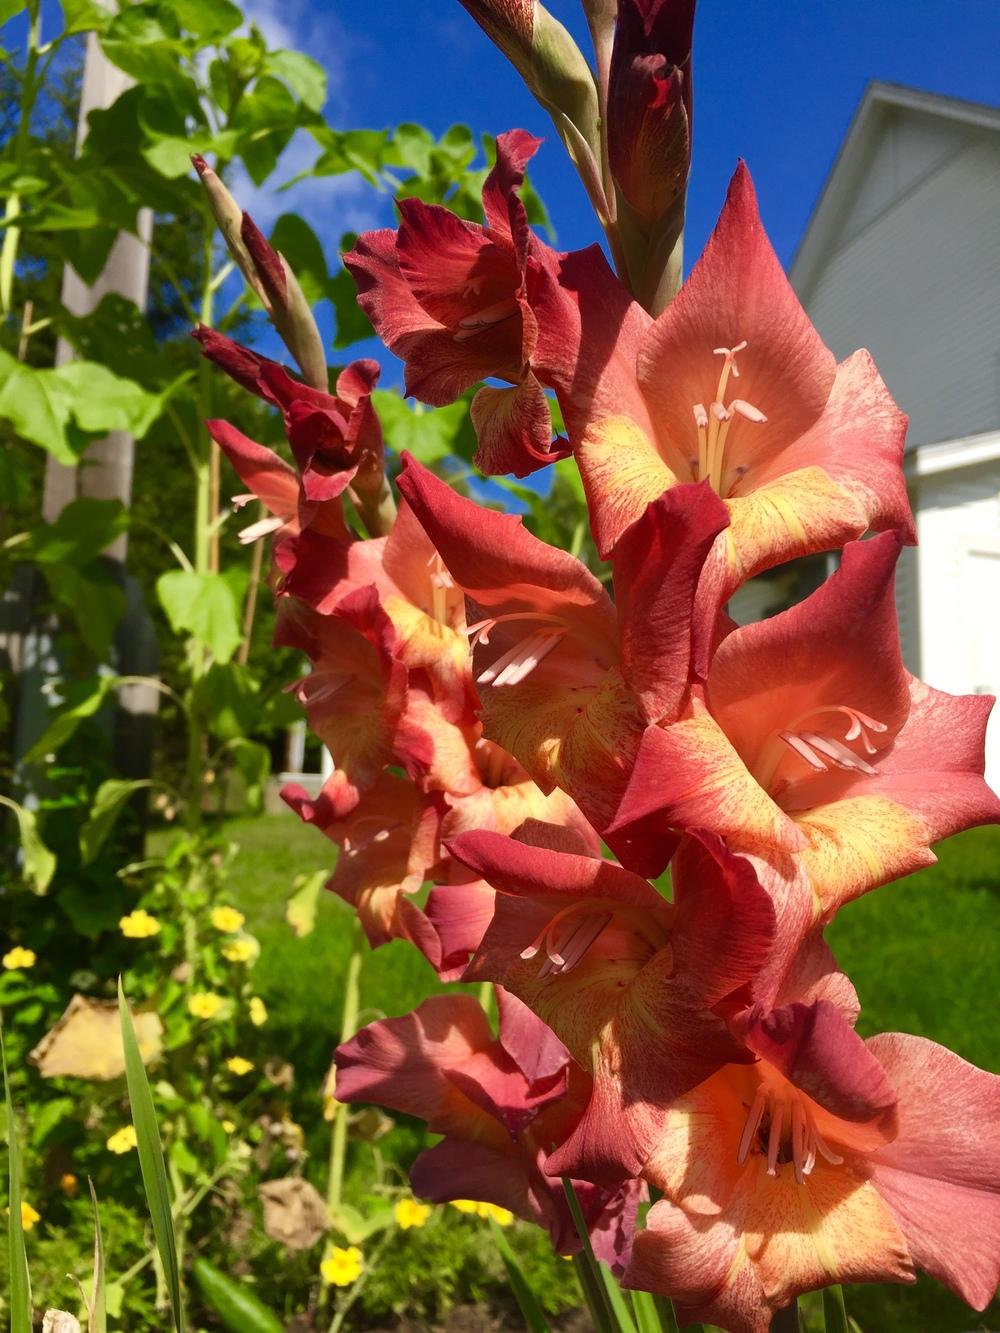 Photo of Gladiola (Gladiolus) uploaded by PoppyLady420